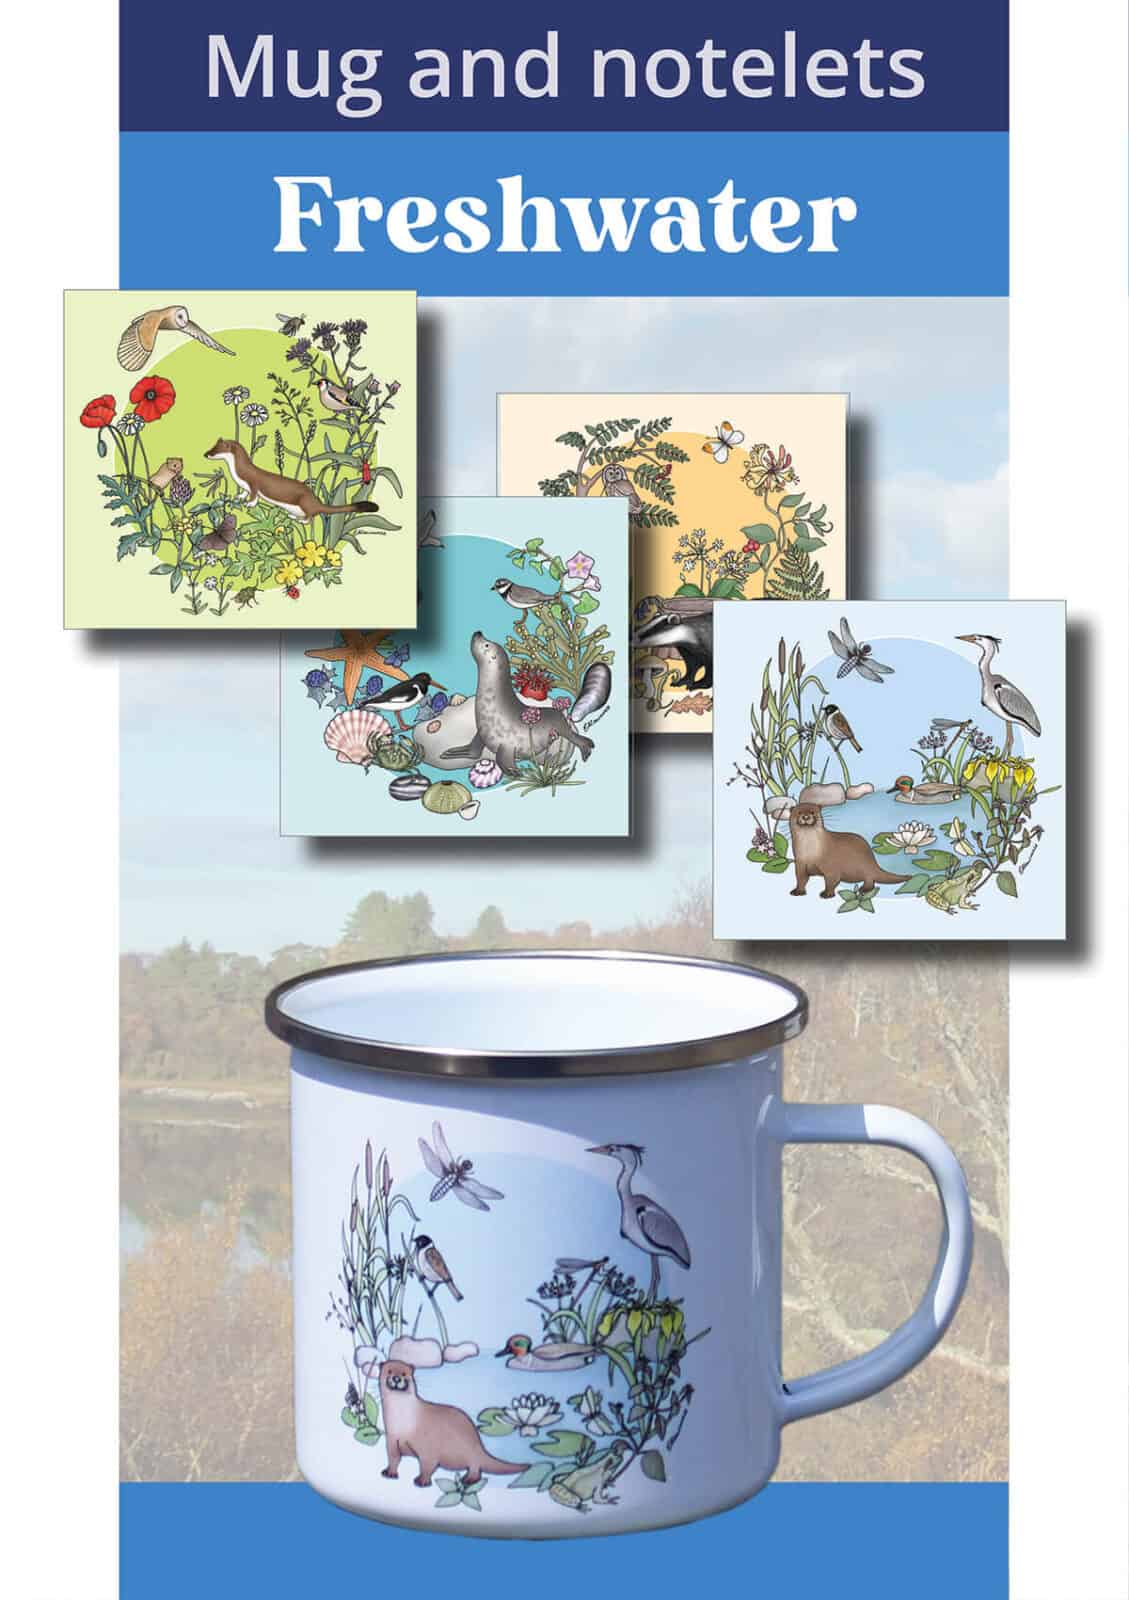 mug and notelets freshwater